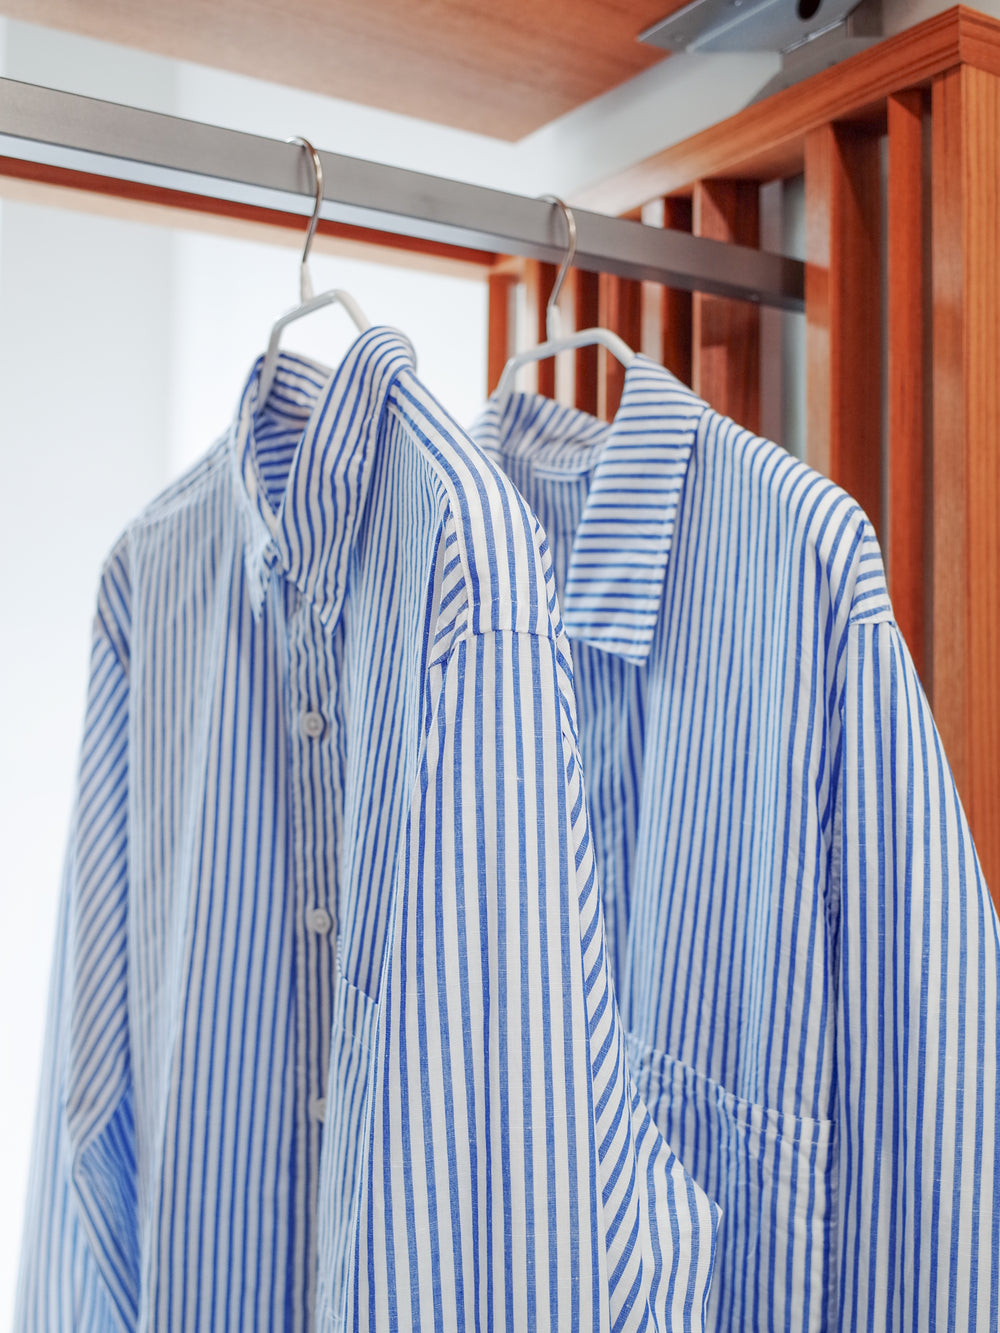 S H Cotton/Linen Blue Stripe